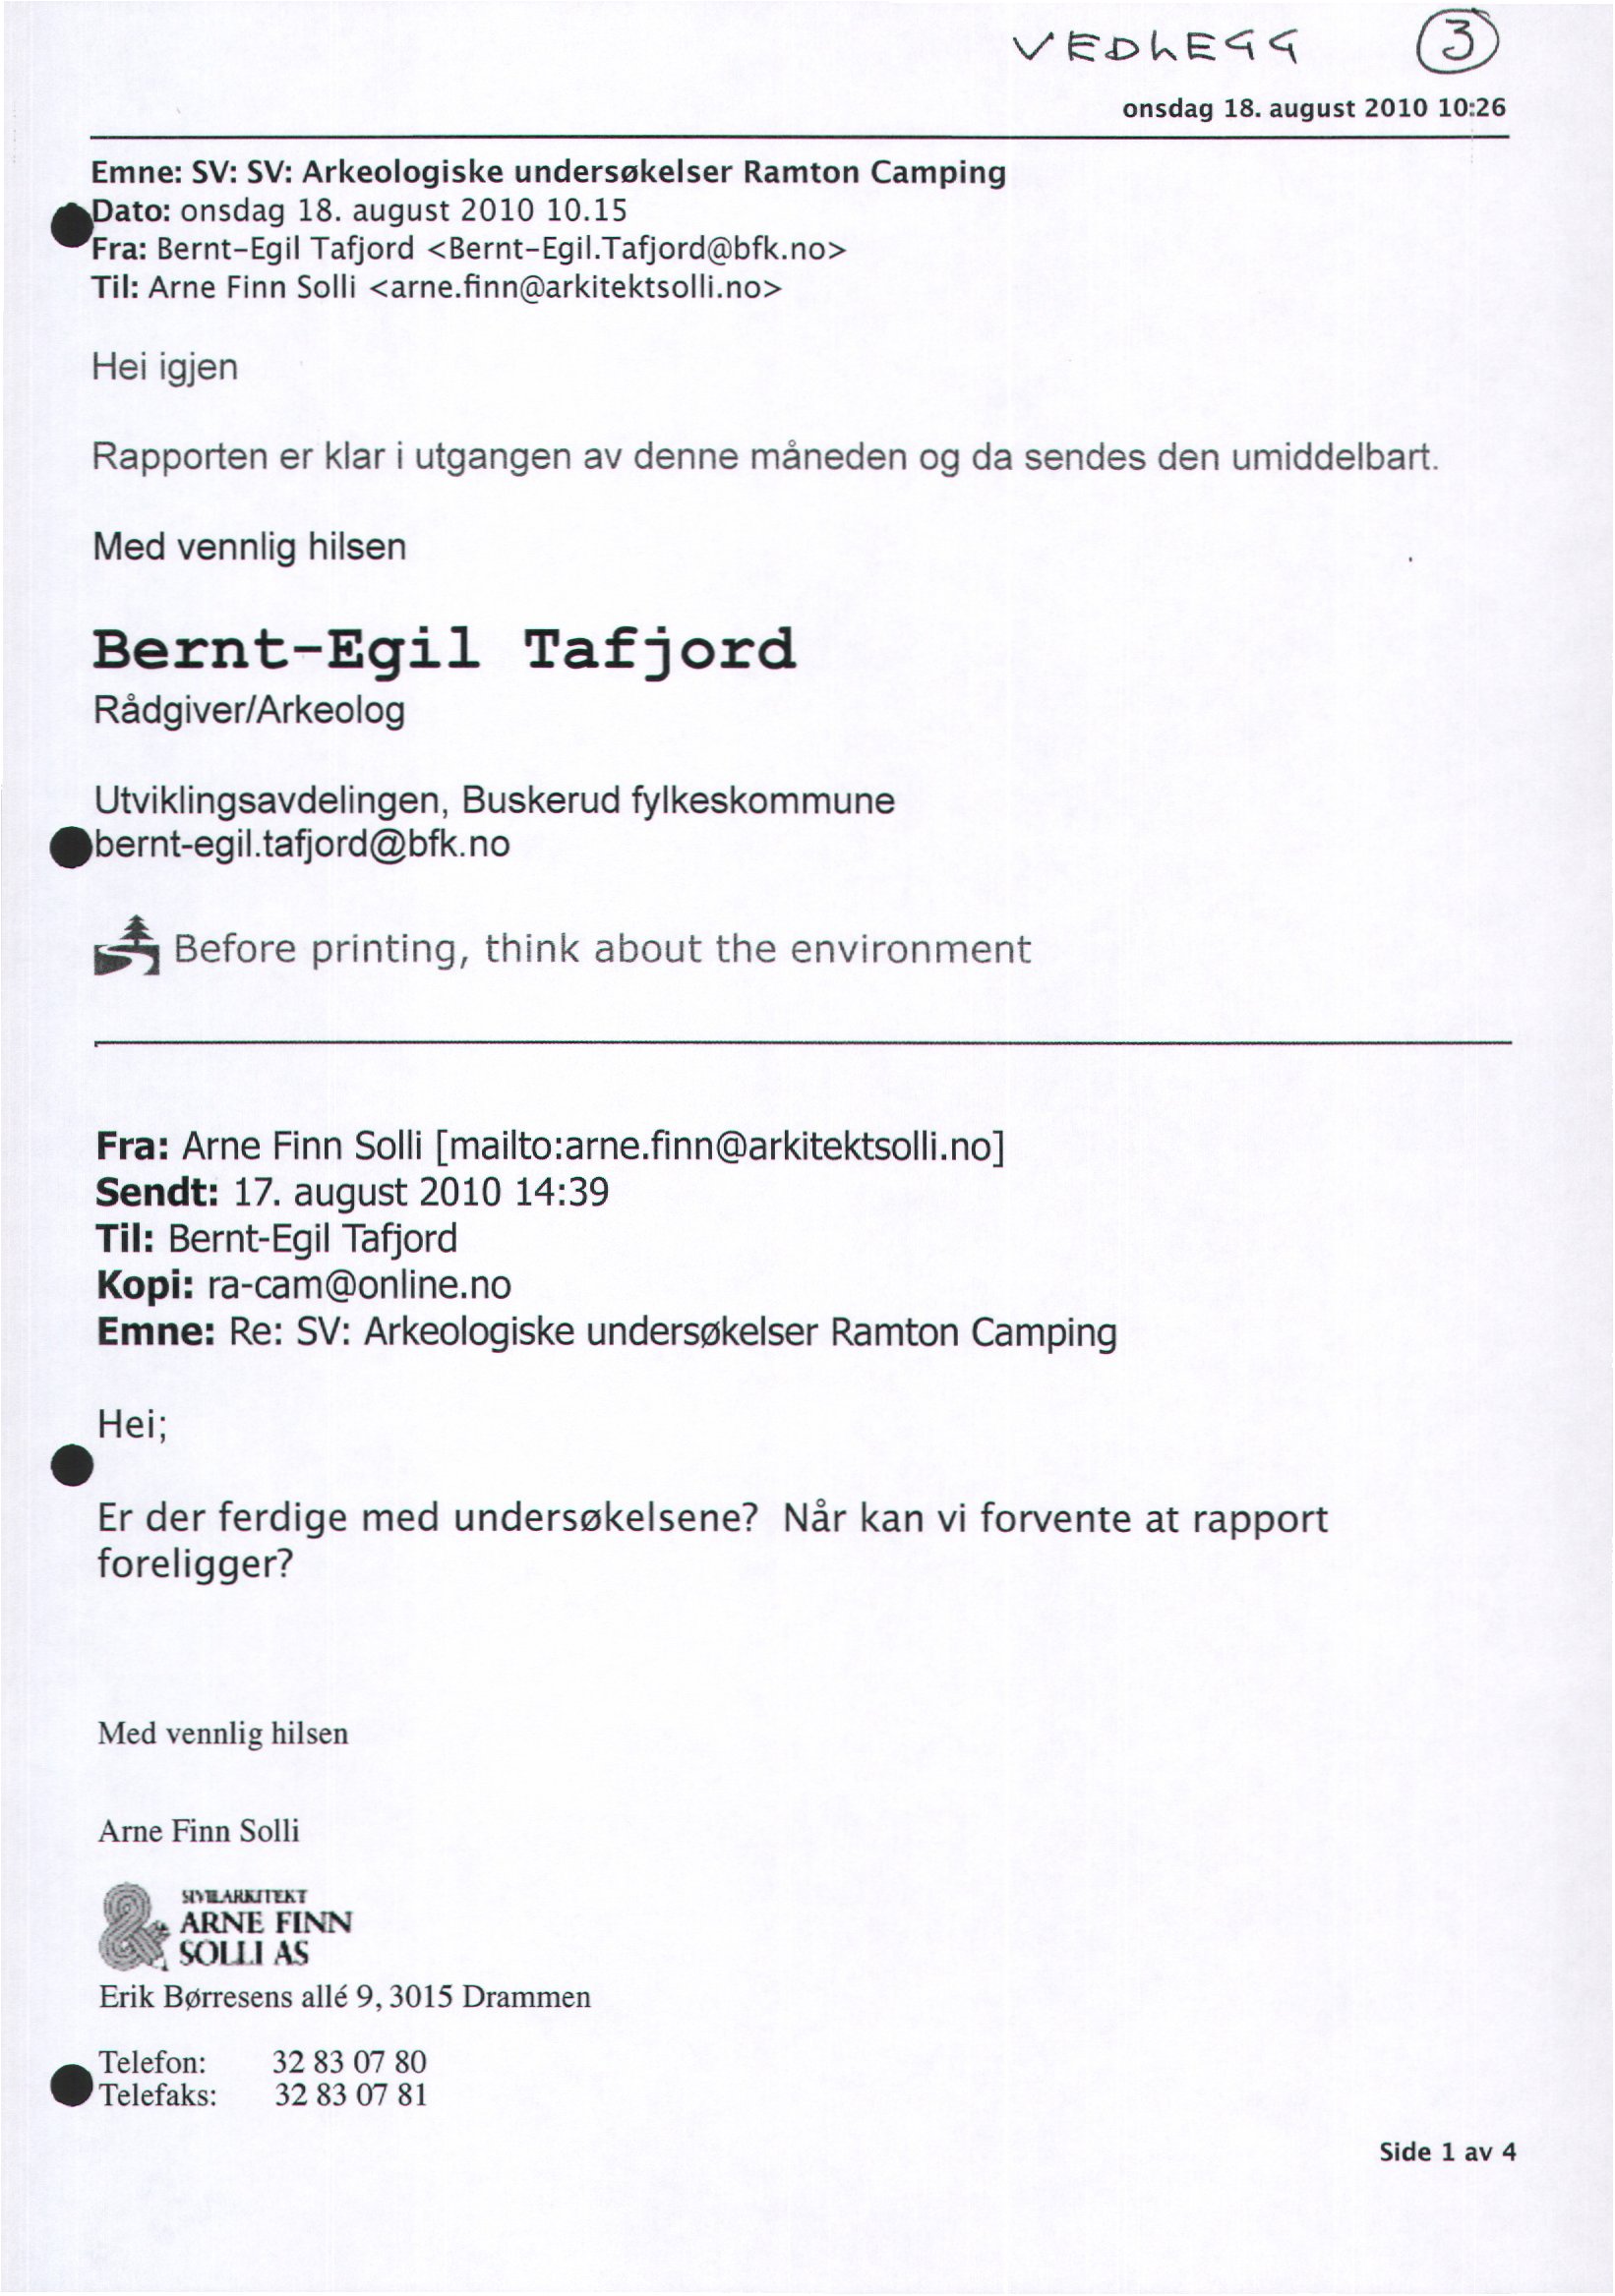 wt.cdr,e onsdag 18. august 2010 10:26 Emne: SV: SV: Arkeologiske undersøkelser Ramton Camping adato: onsdag 18. august 2010 10.15 wfra: Bernt-Egil Tafjord <Bernt-Egil.Tafjord@bfk.